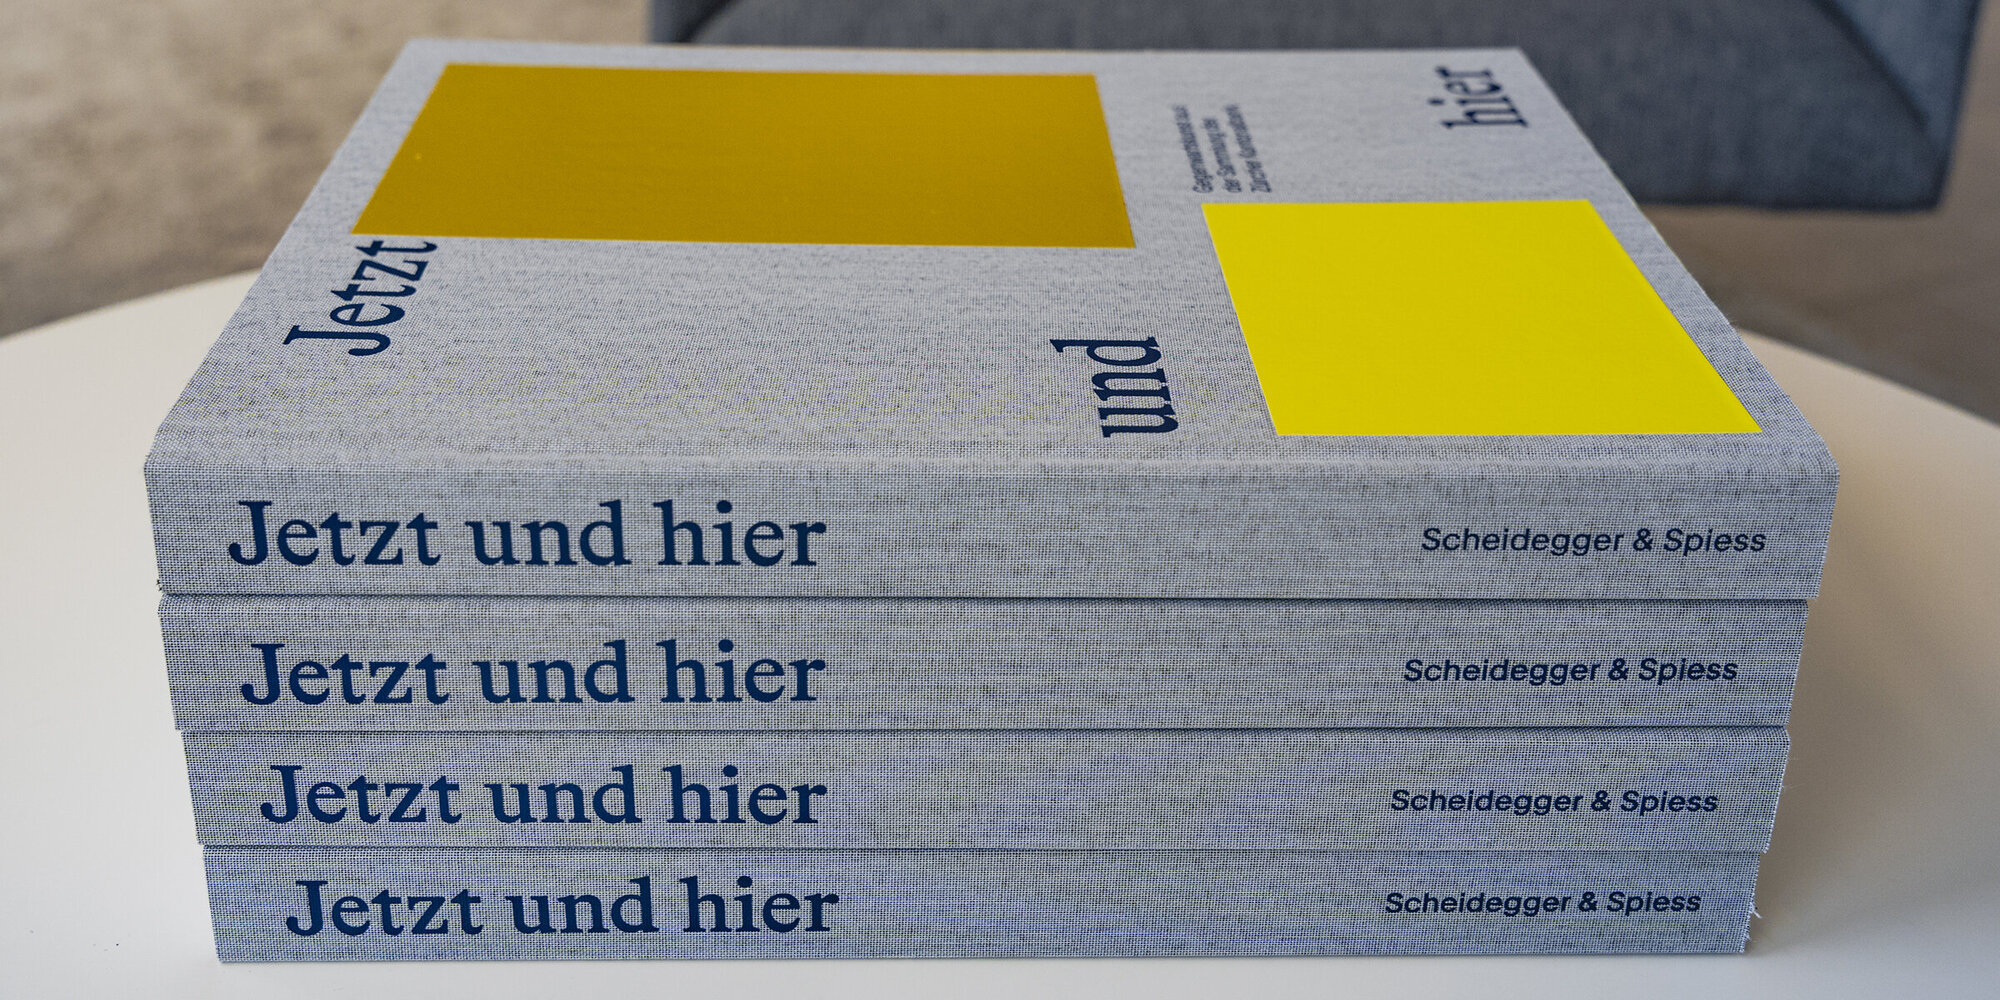 Jetzt und hier - Das Buch über Zürcher Gegenwartskunst aus unserer Sammlung (Bild: Simon Baumann)